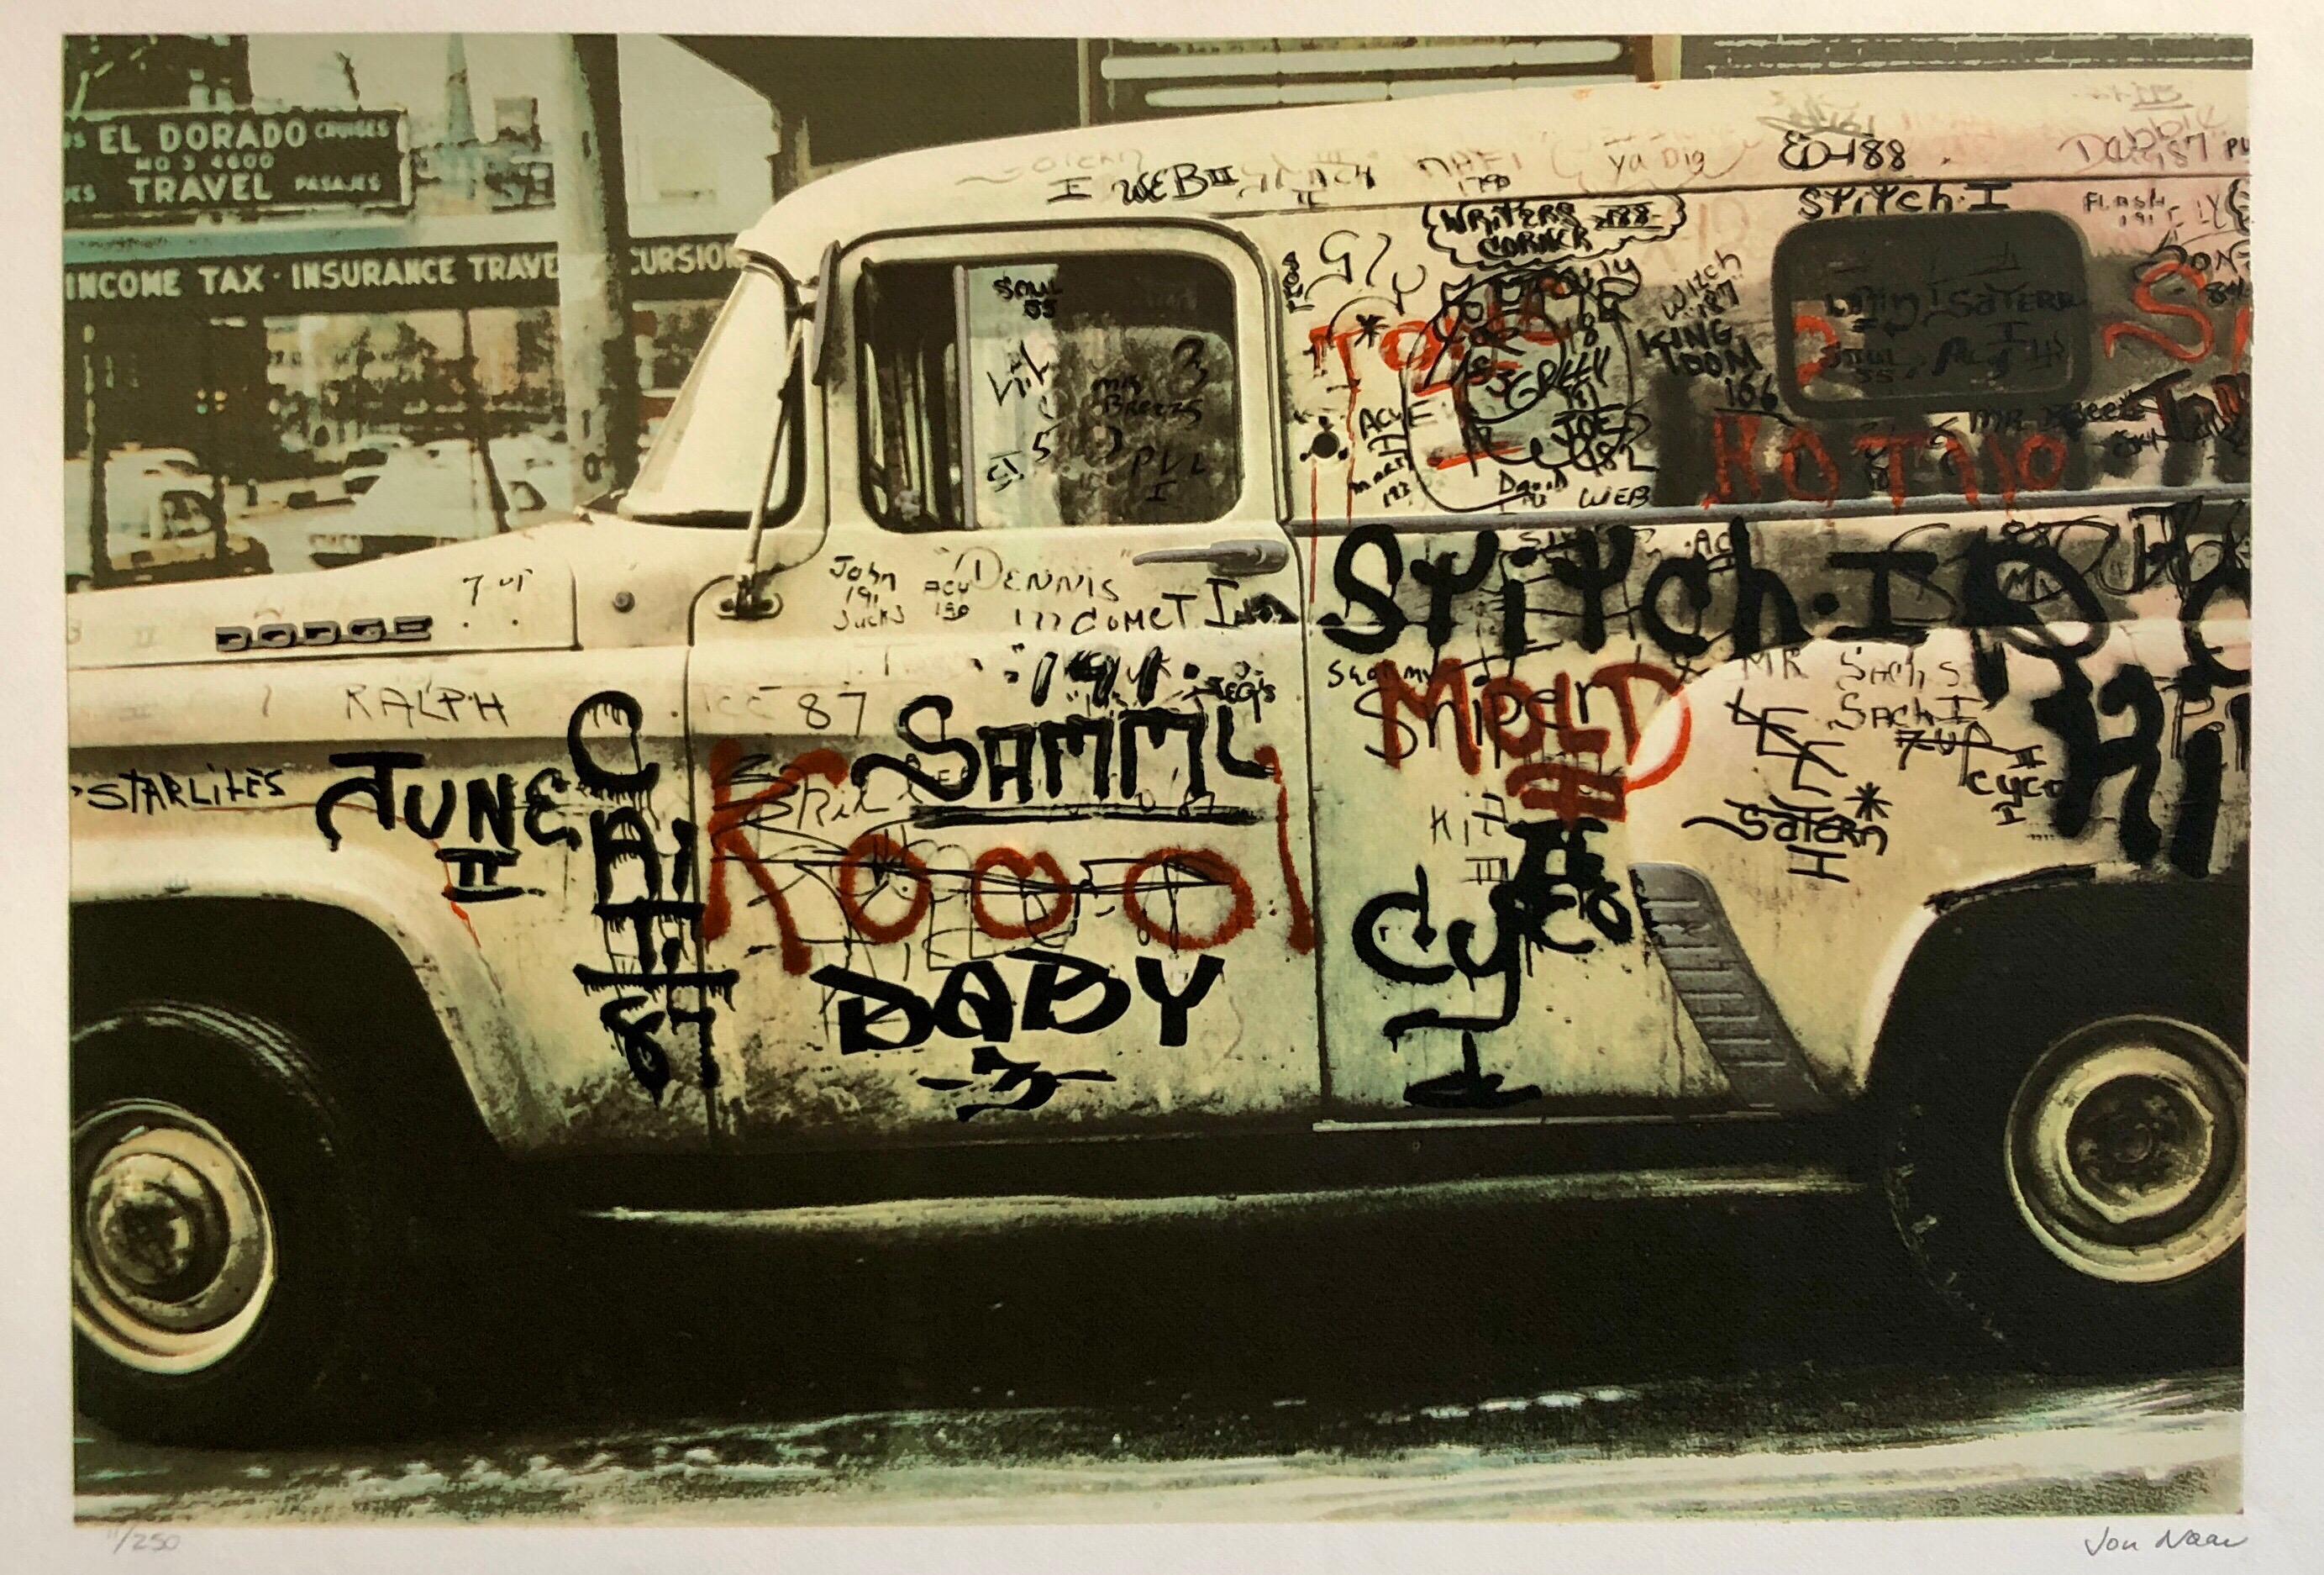 Jon Naar Abstract Print – Graffiti-Kunstfotografie Siebdruckdruck Truck mit Siebdruck, New York City, 1970er Jahre, Pop Art